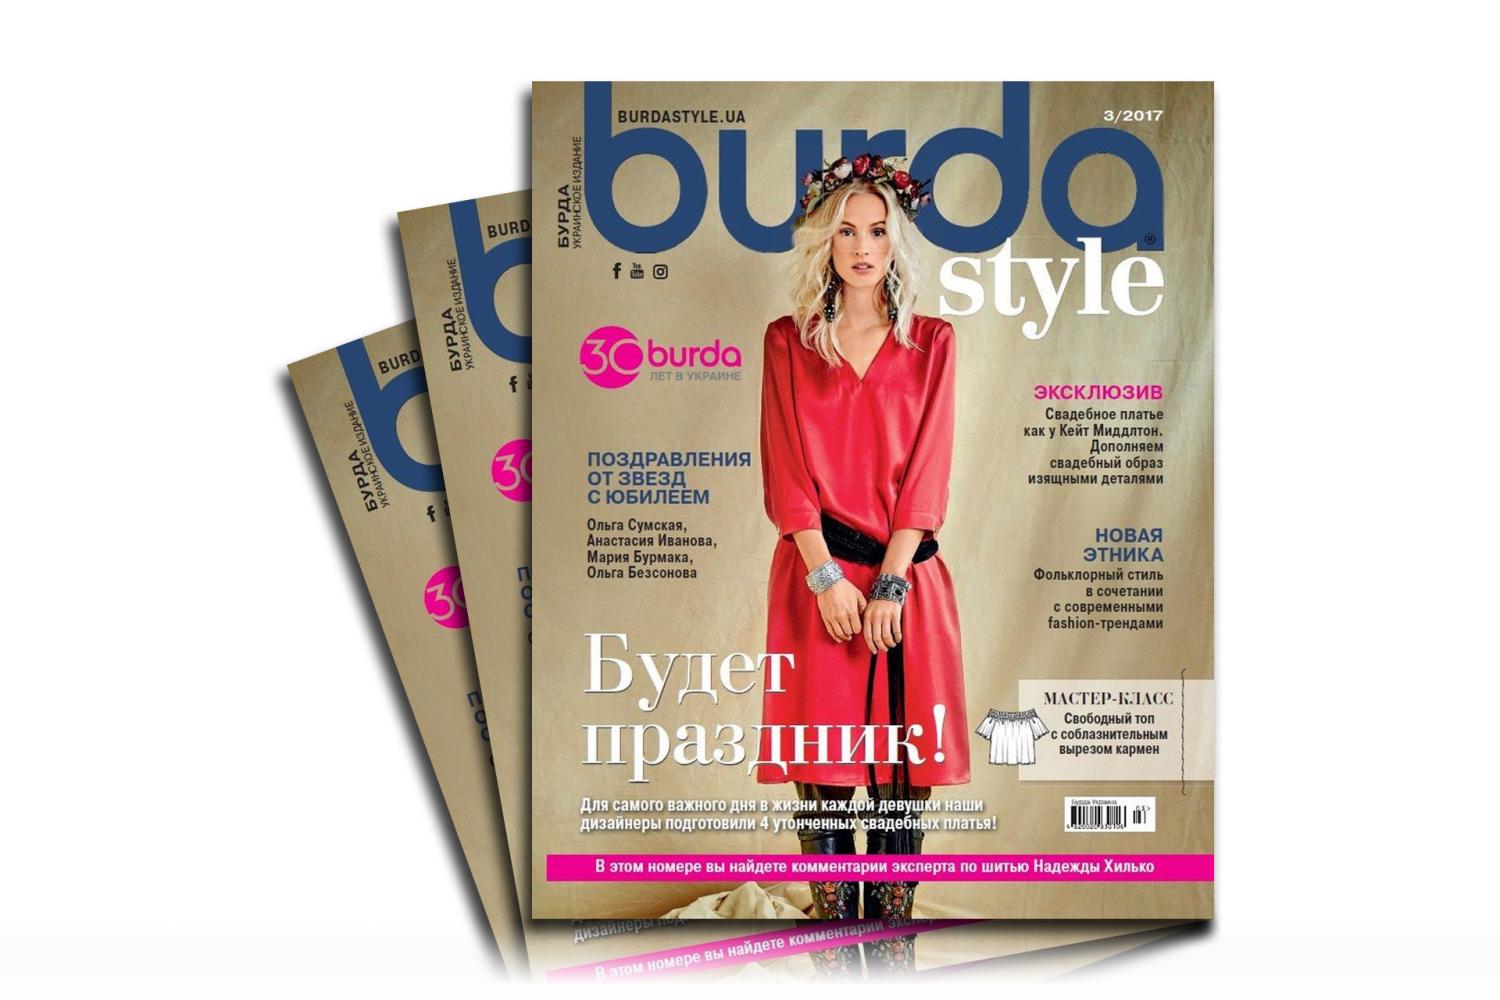 Журнал "Бурда" 03/2017 - 13853